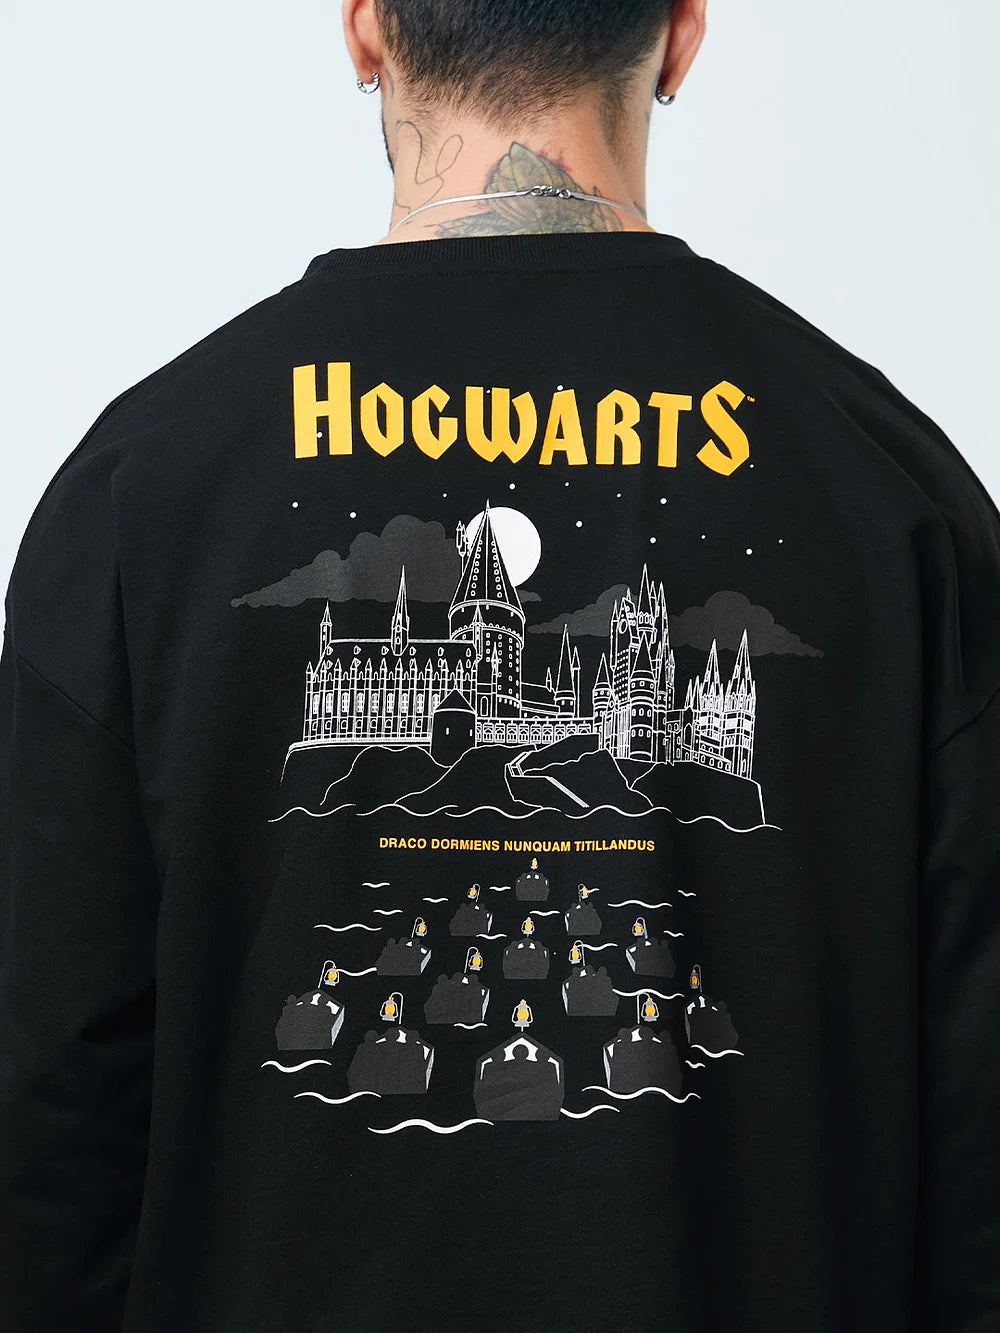 Harry Potter Hogwarts (UK version)